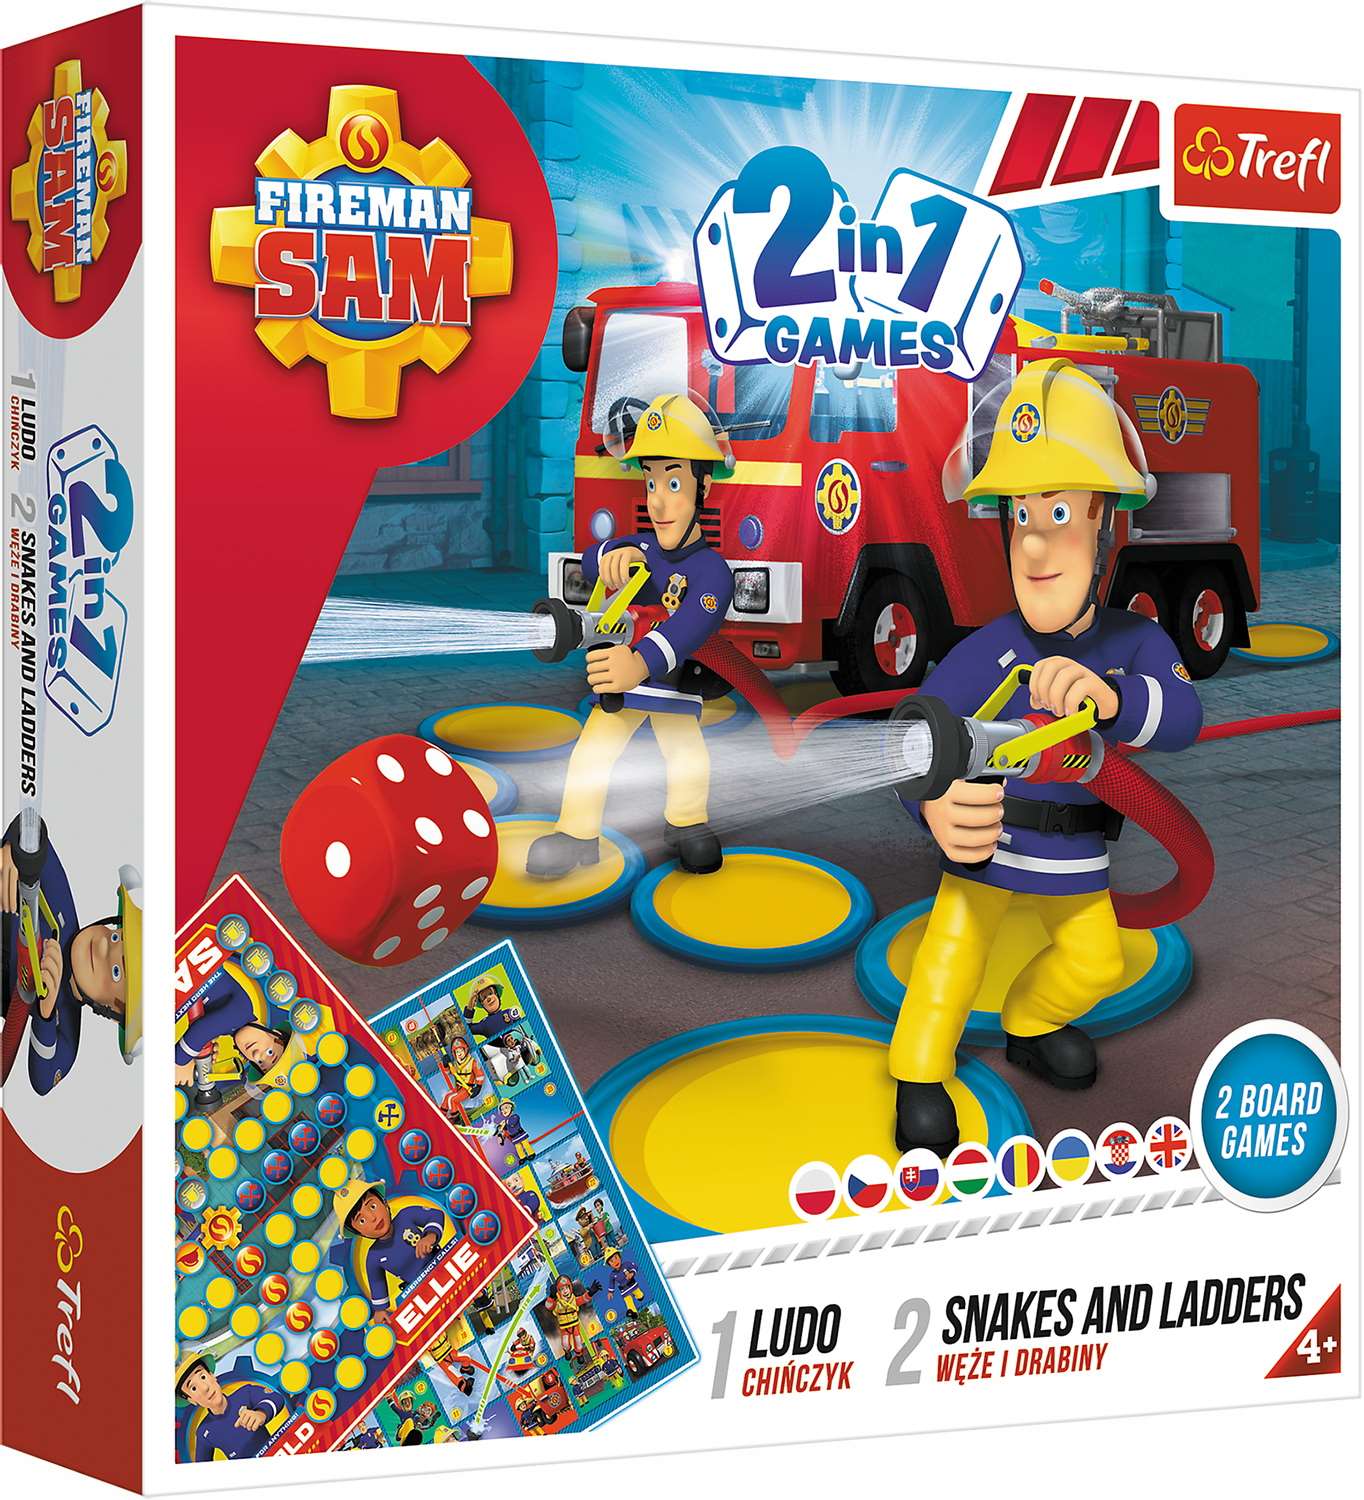 Настільна гра Пожежник Сем: Лудо + Змії і Драбини 2 в 1 (Fireman Sam: Ludo + Snakes & Ladders 2 in 1), бренду Trefl, для 2-4 гравців, час гри < 30хв. - KUBIX